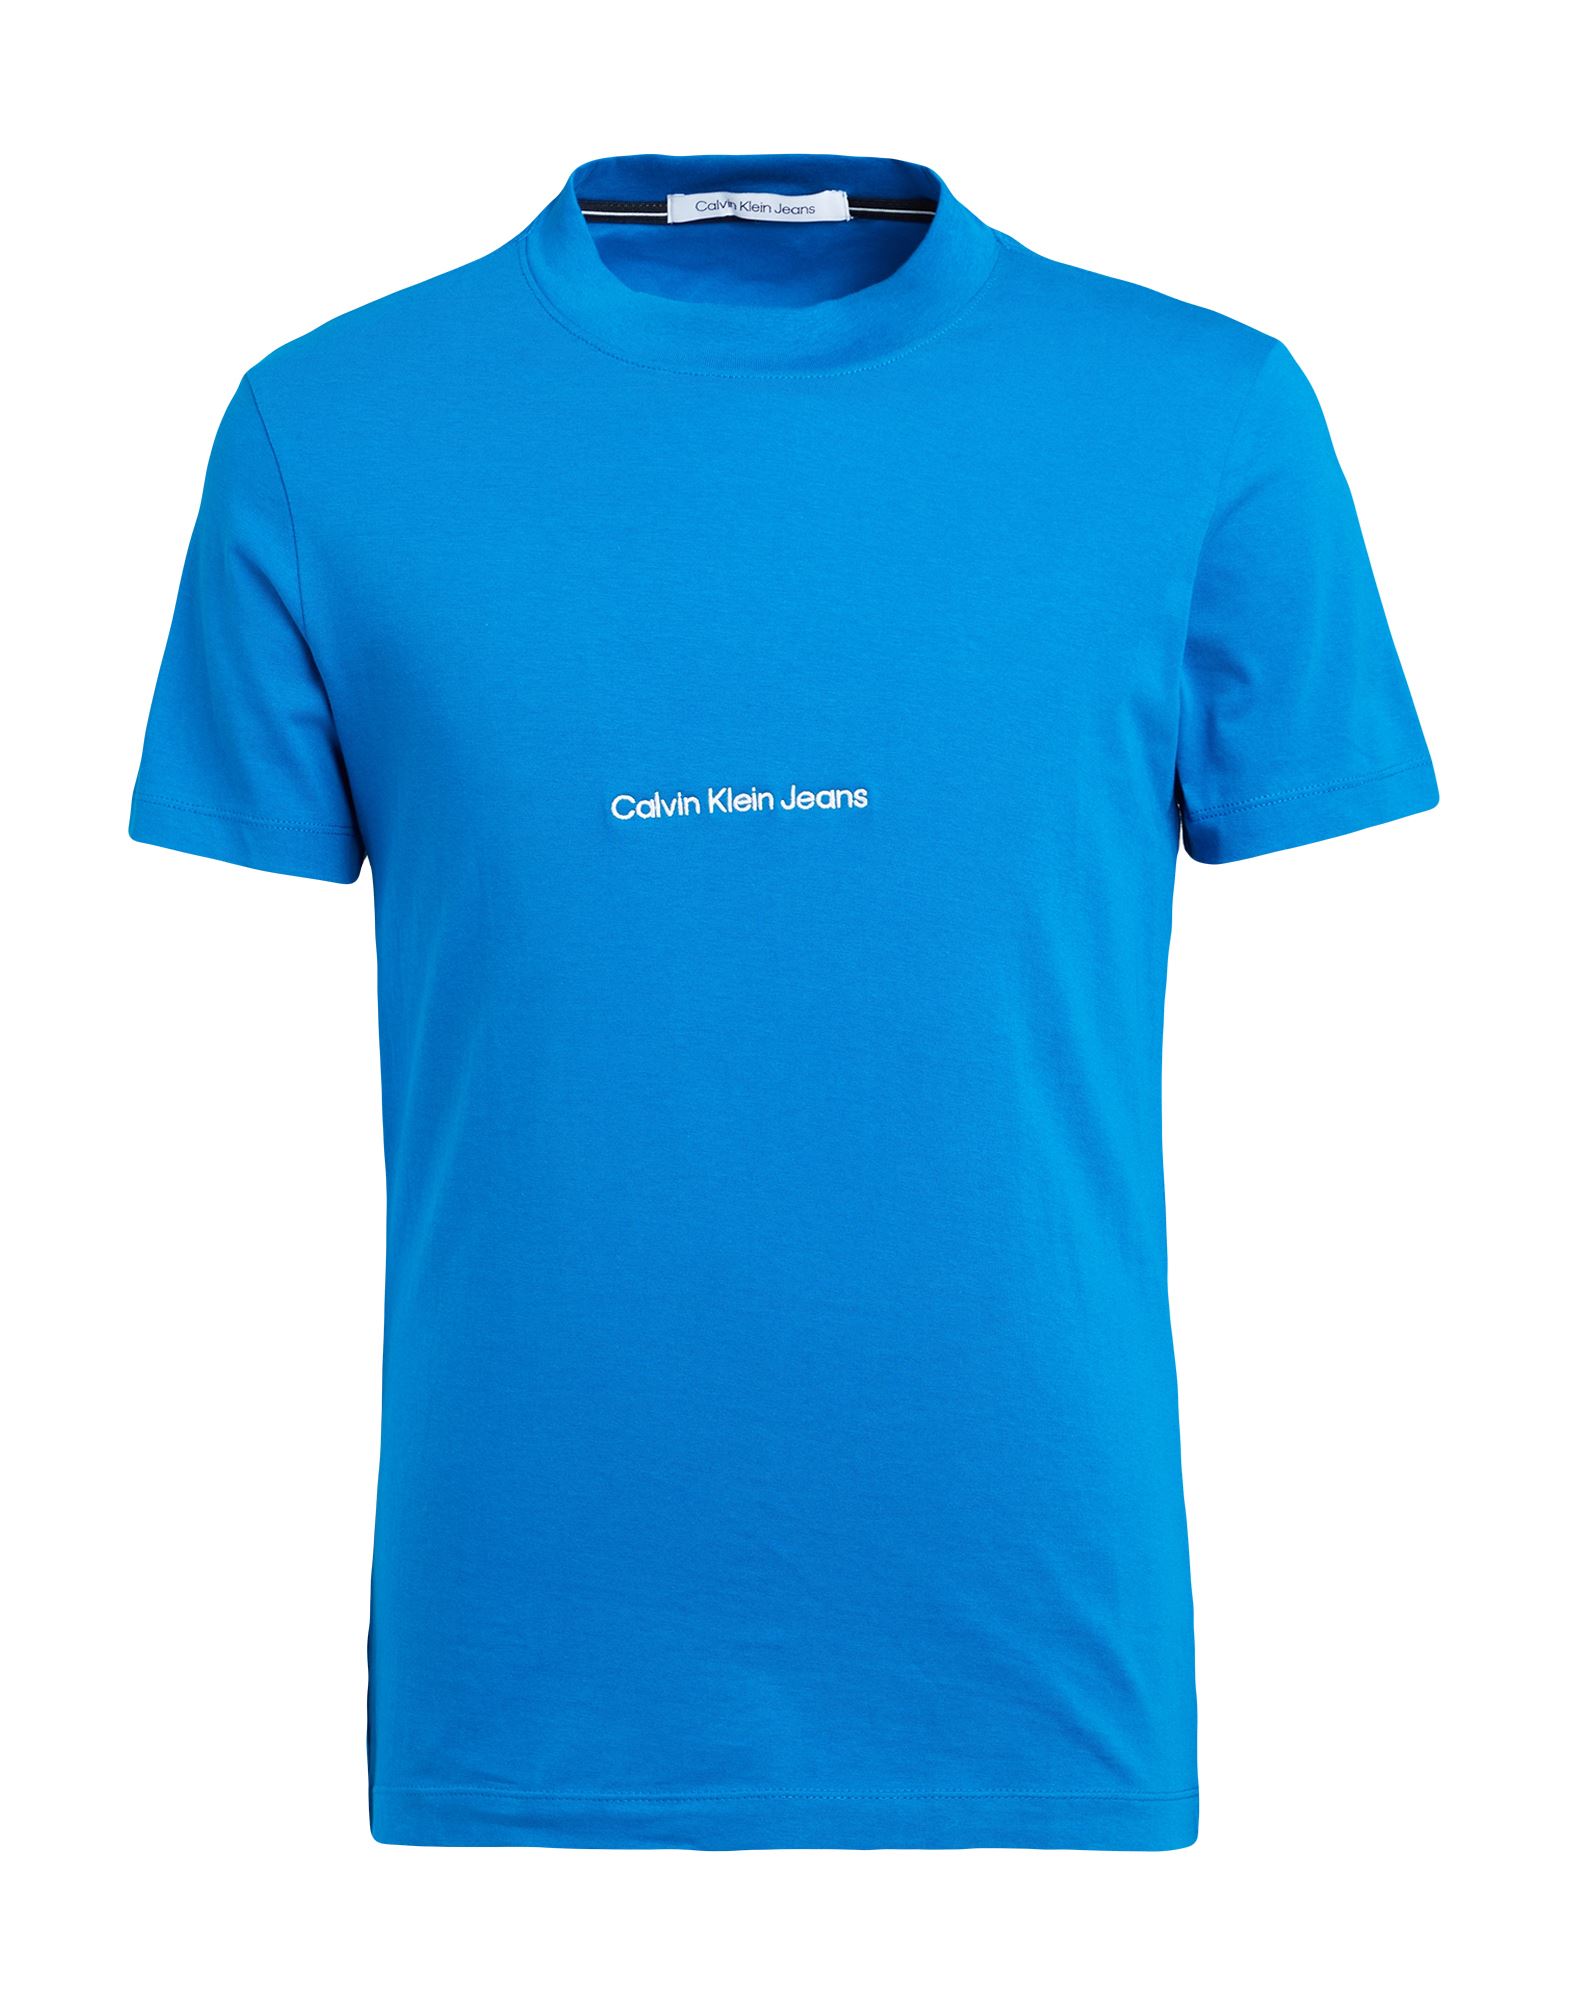 CALVIN KLEIN JEANS T-shirts Herren Azurblau von CALVIN KLEIN JEANS